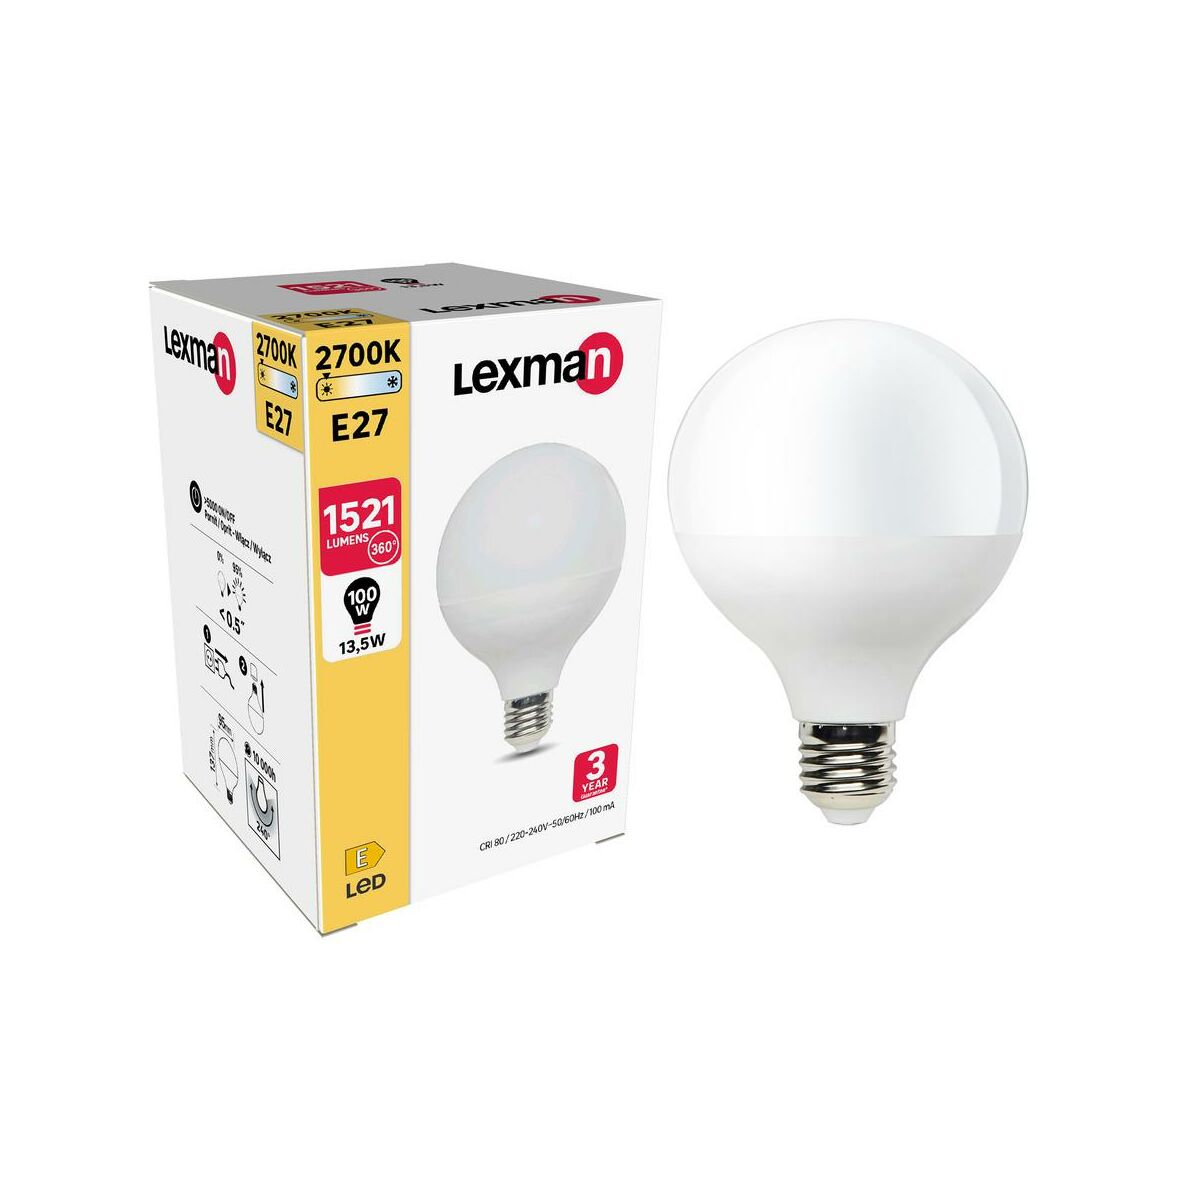 Żarówka LED E27 13.5 W = 100 W 1521 lm Ciepła biel Lexman